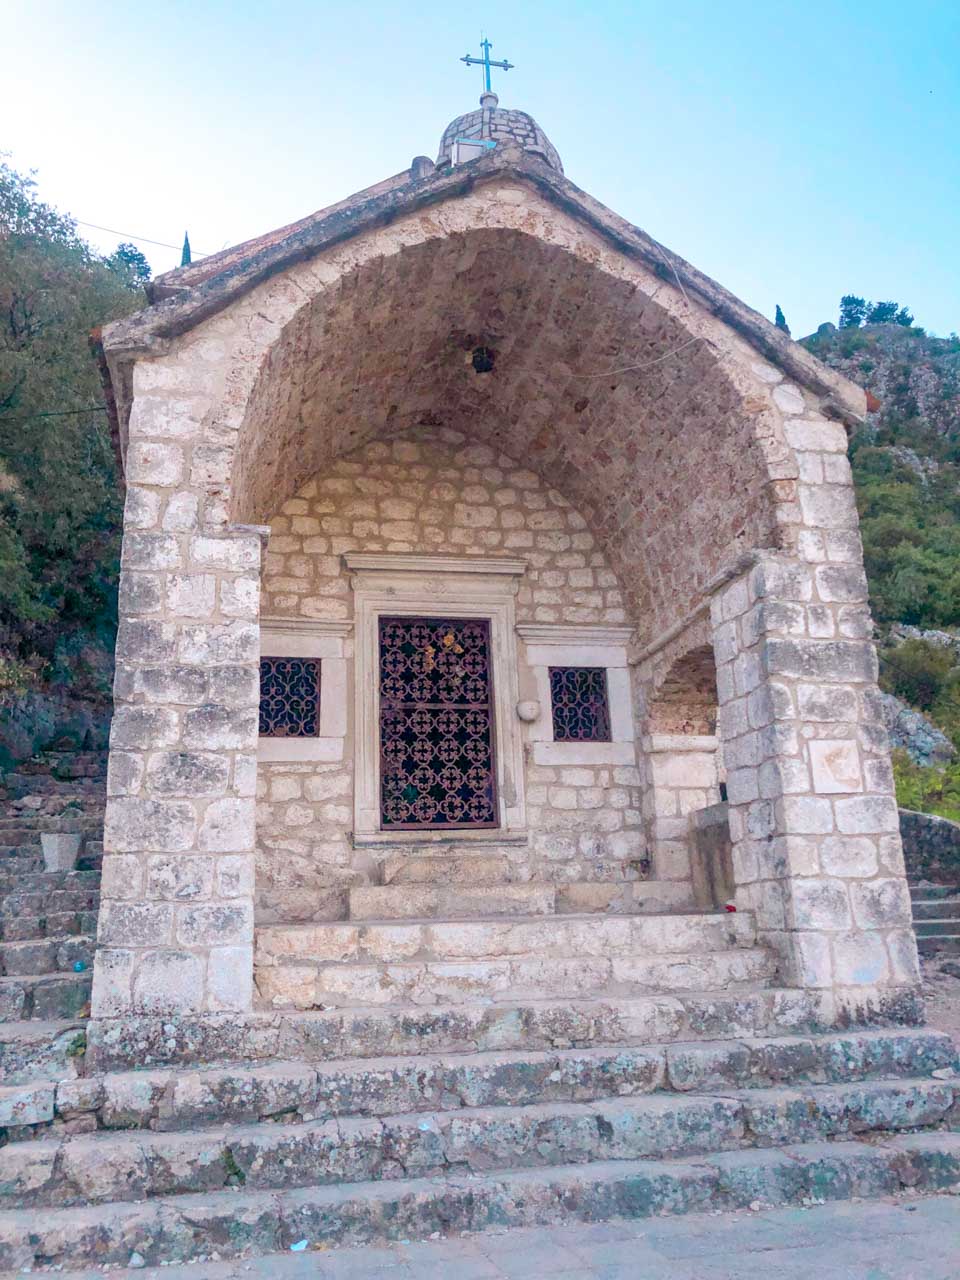 Crkva Gospe od Zdravlja (Church of Our Lady of Health) in Kotor, Montenegro